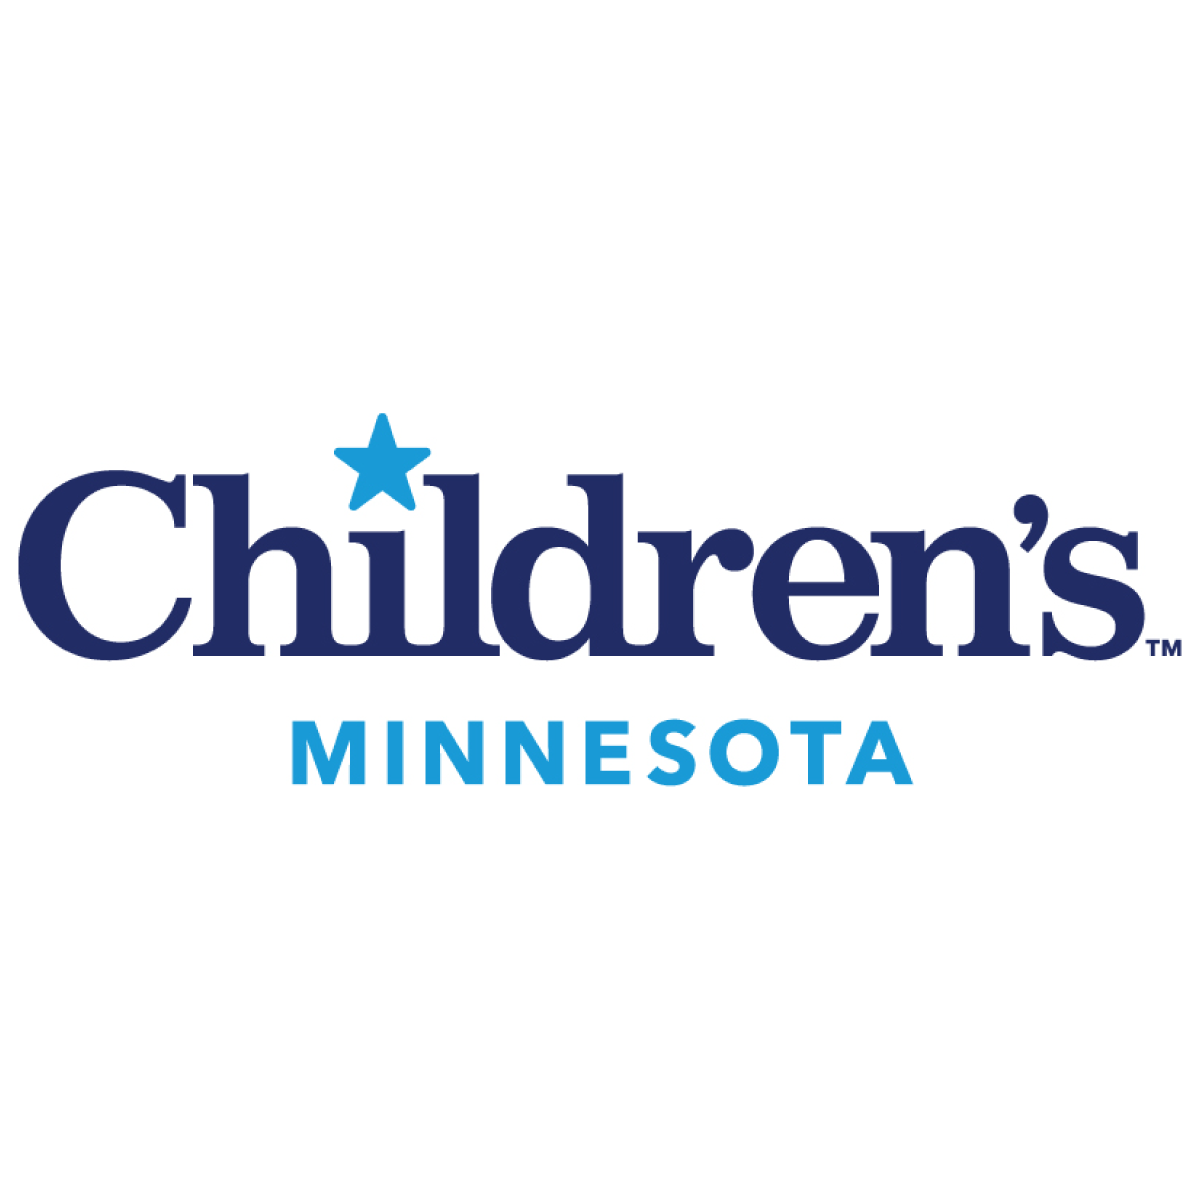 Children's Minnesota
childrensmn.org 